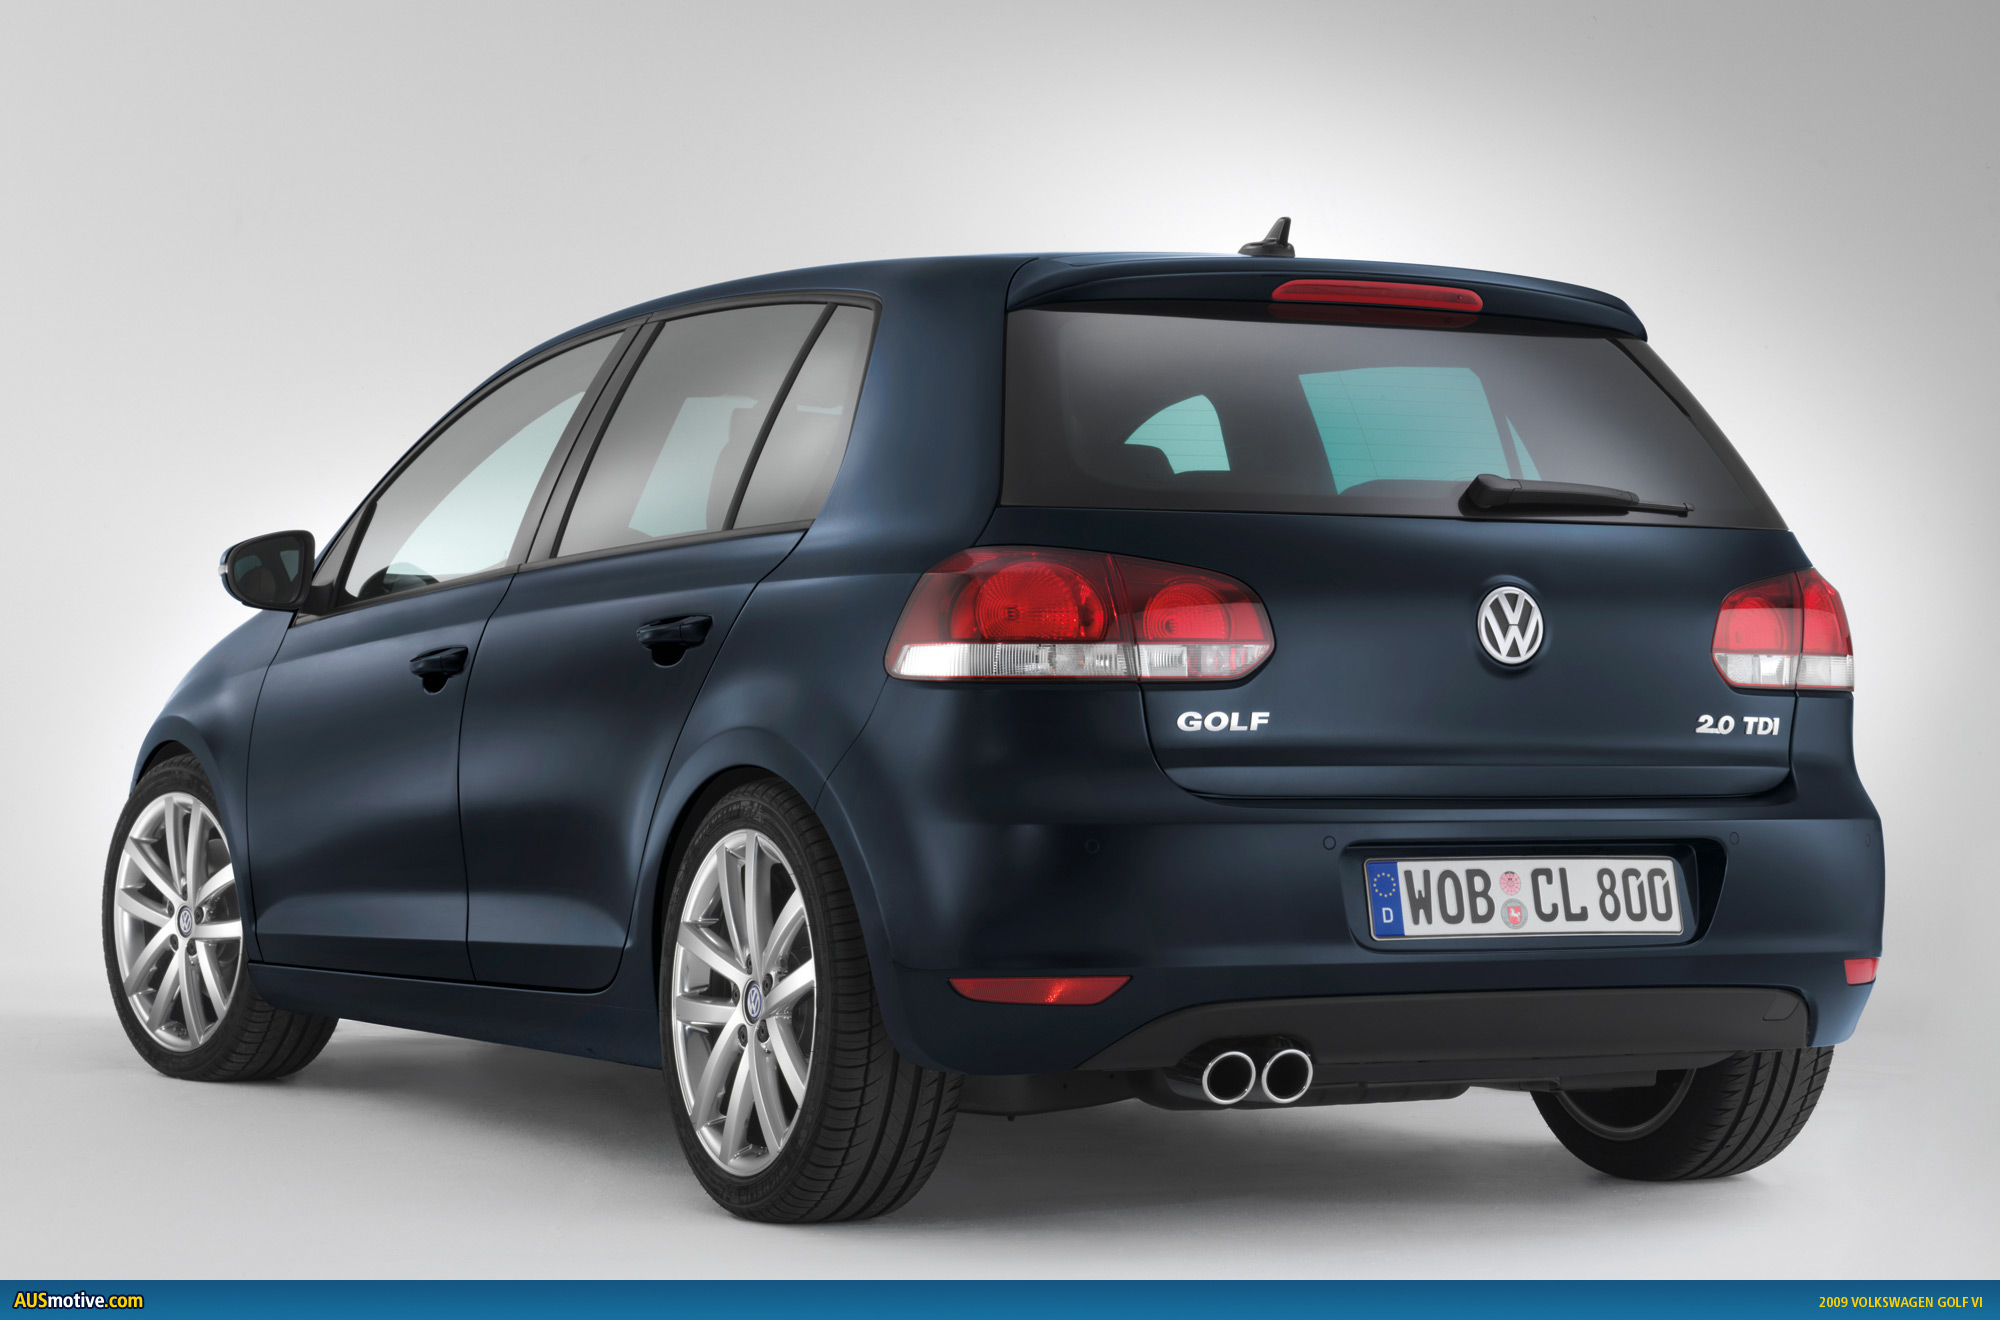 Volkswagen Golf 18. View Download Wallpaper. 2000x1320. Comments